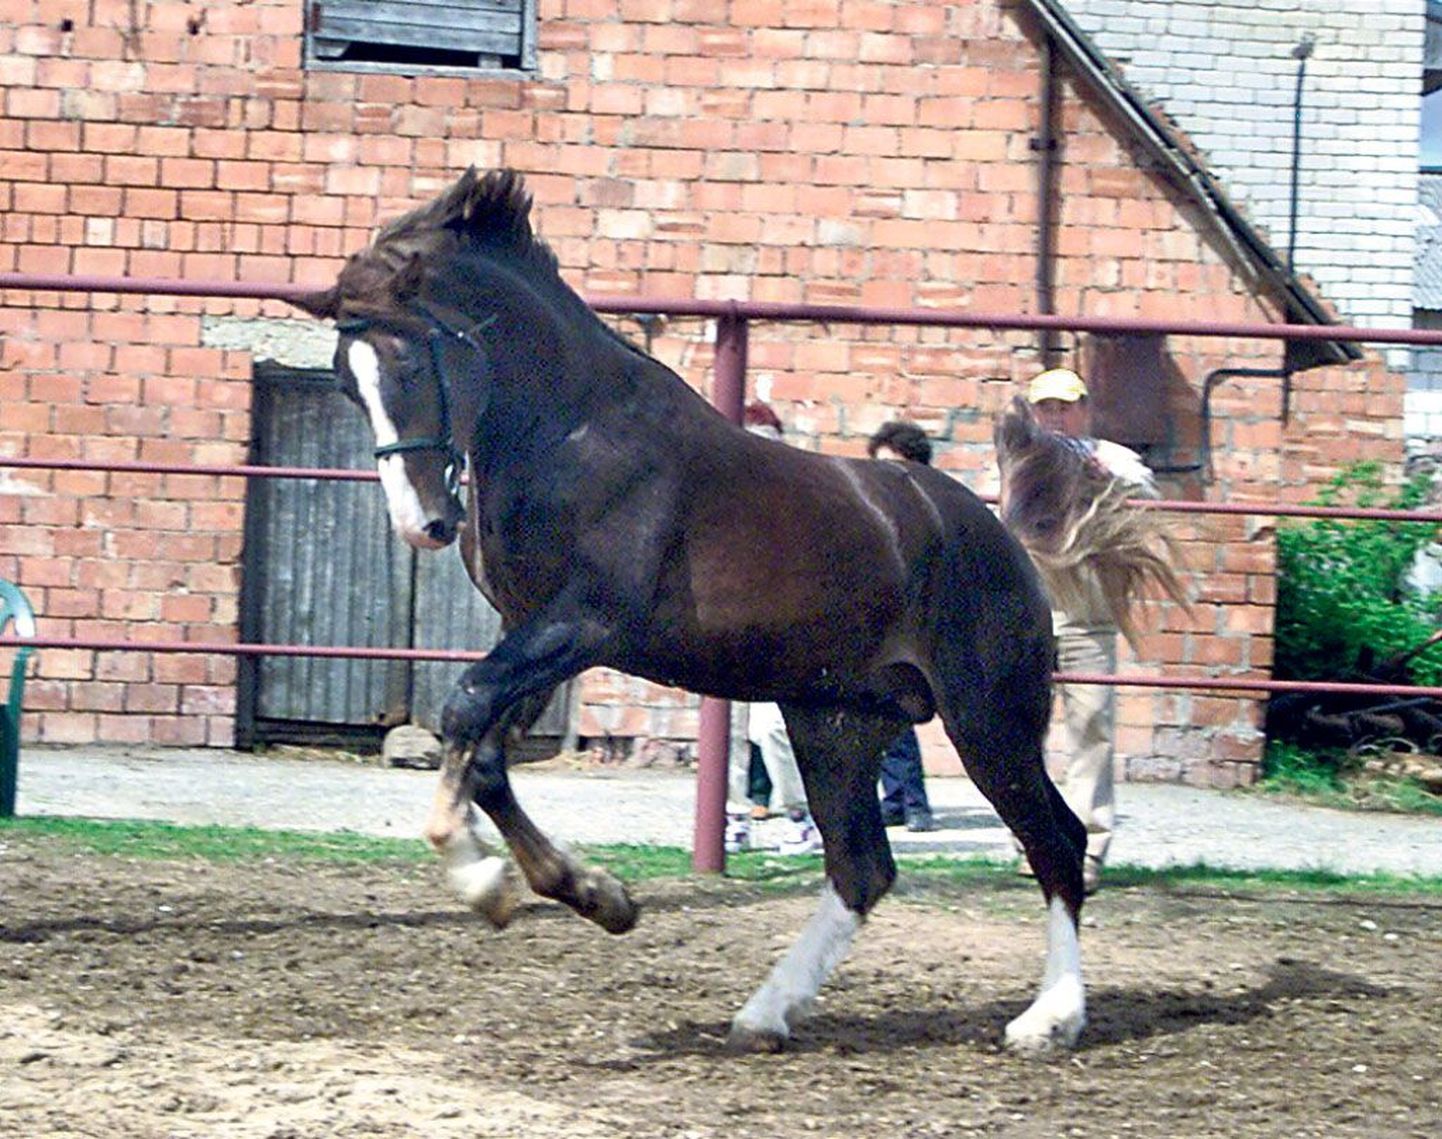 Tori hobuse tõuaretusse on ristatud mitu maailmas tuntud hobutõugu, aga ka Eesti hobust, kusjuures huvi Tori hobuse vastu on kasvamas välismaalgi. Kõige kaugemal Eestist võib leida Tori hobuseid Austraalias.